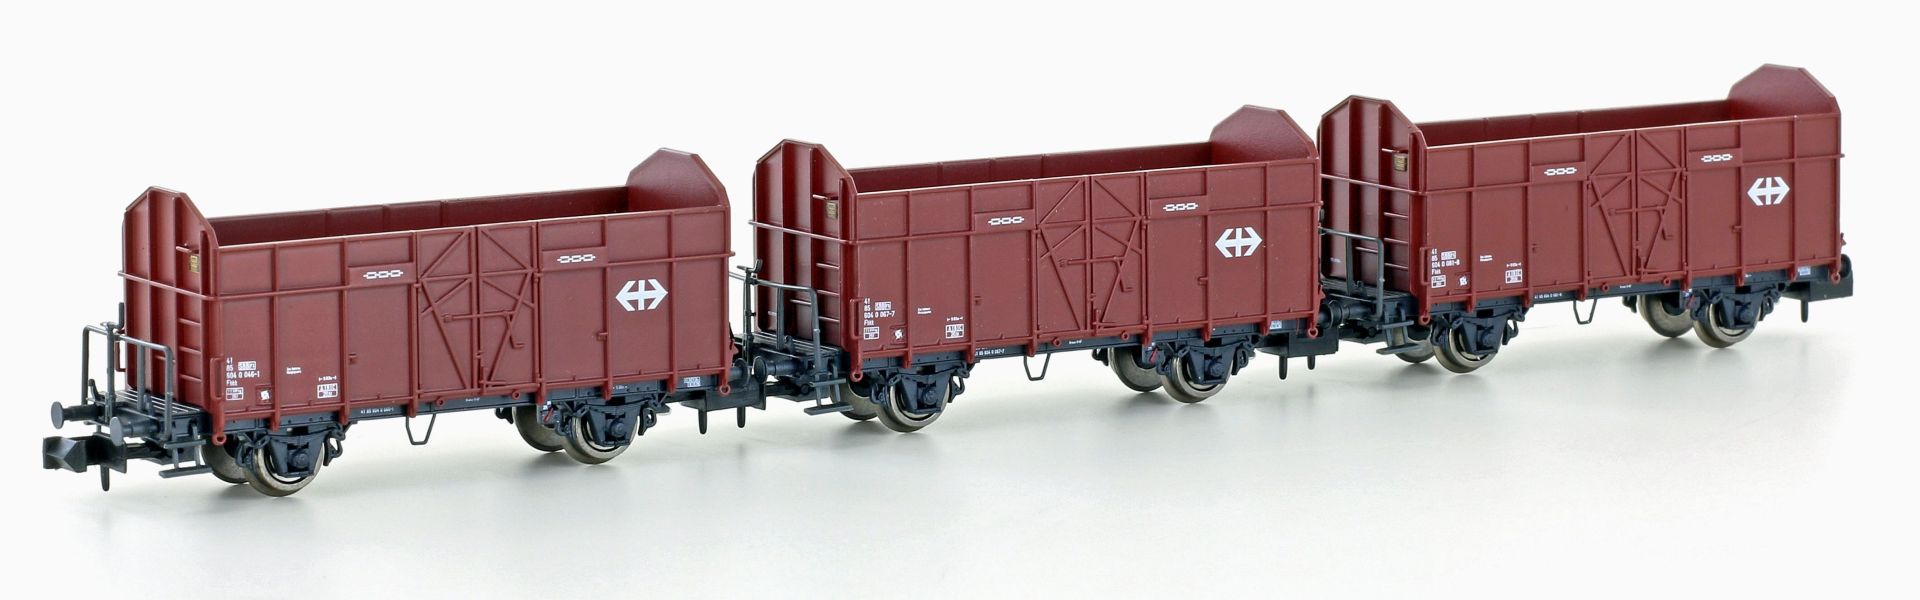 Hobbytrain H24302 - 3er Set offene Güterwagen Fbkk, SBB, Ep.IV